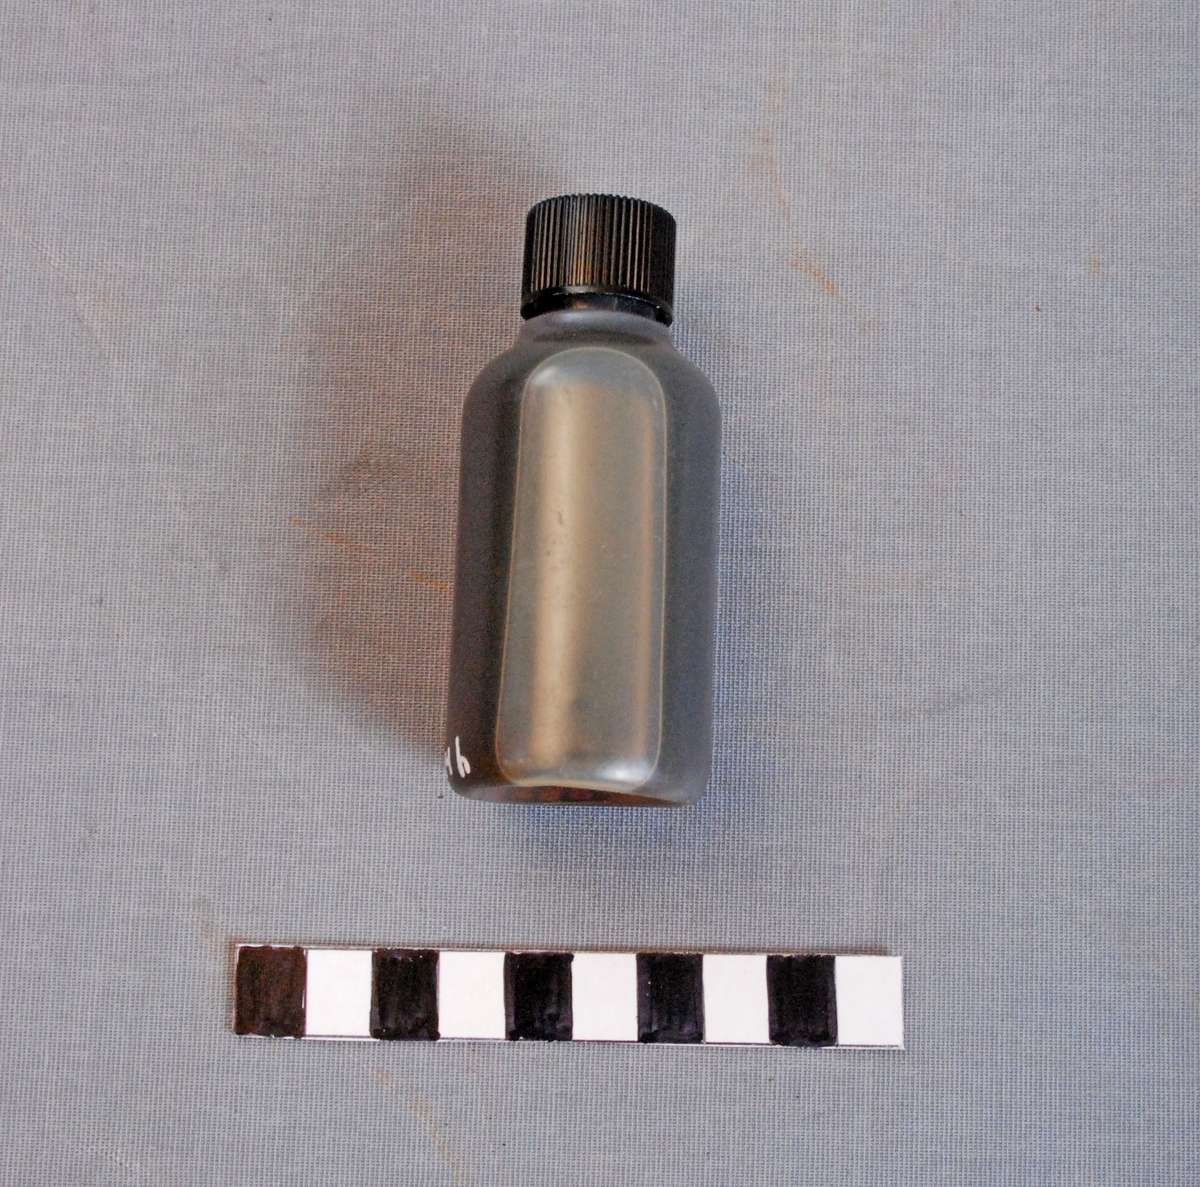 Oljeflaske for bruk til linepistol/redningspistol. Flasken er sylindrisk og har svart plastkork. Inneholder olje.